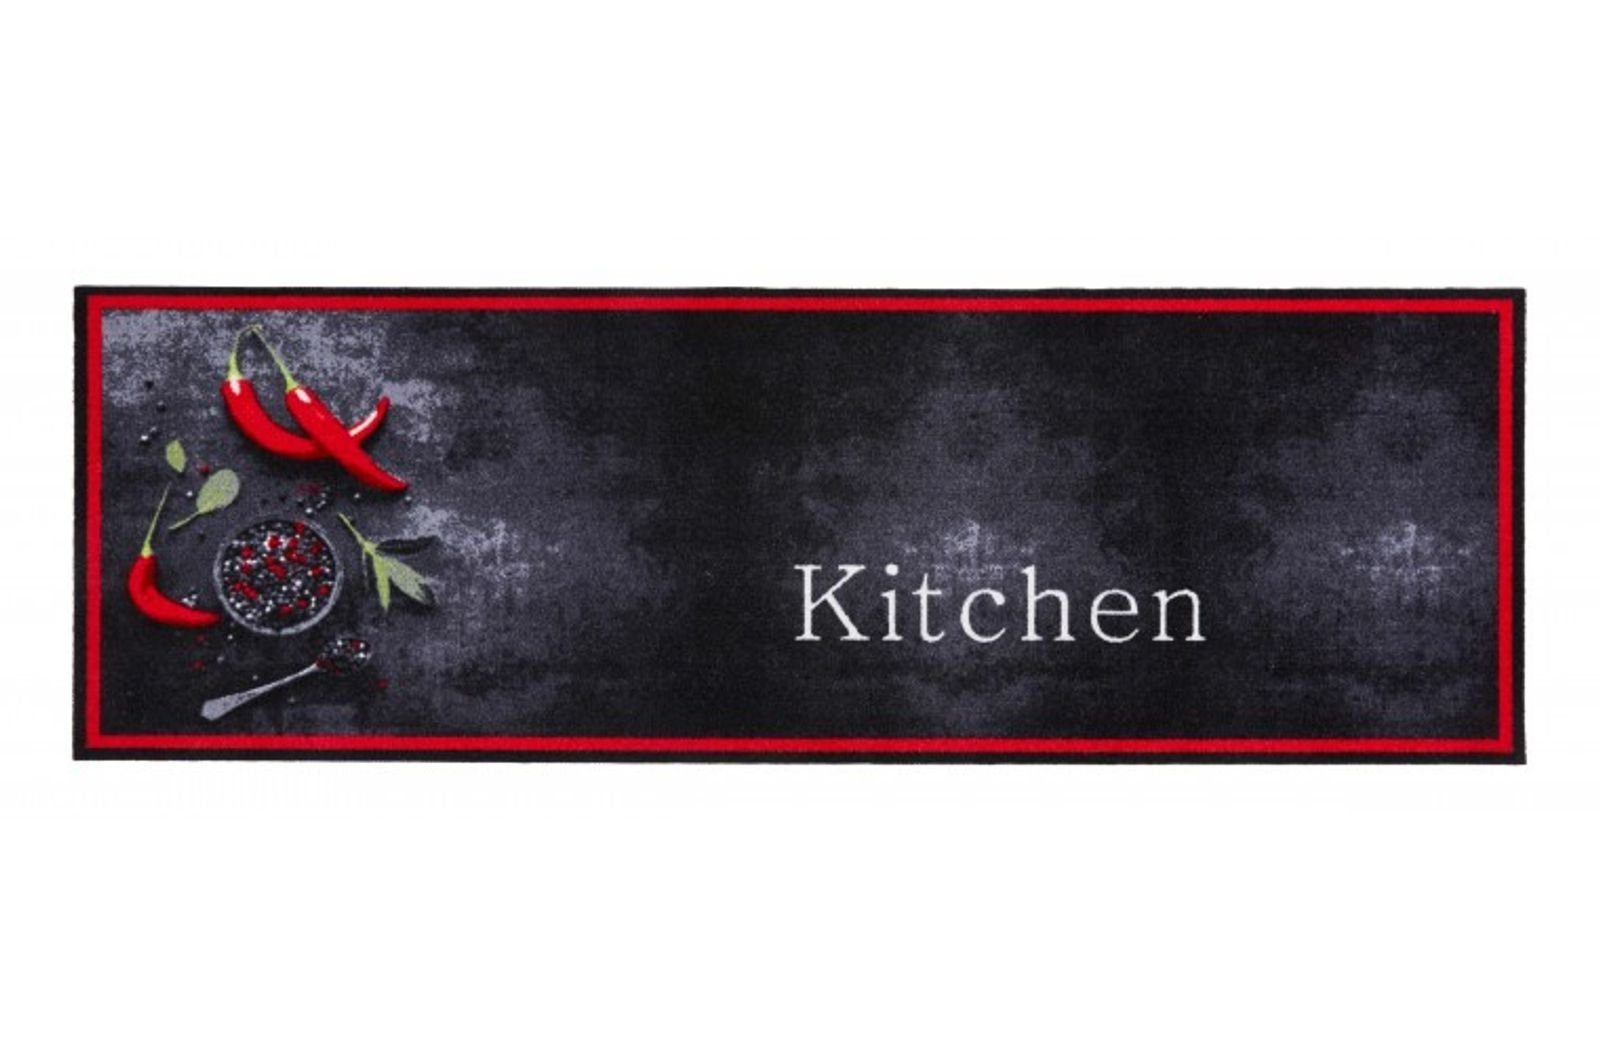 Läufer MD Entree Cook&Wash Eingangsmatte - Teppichmatte - Küchenteppich, MD Entree, rechteckig, Höhe: 5 mm, bei 30° waschbar, anti-rutsch, 50 x 150 cm, Spicy Kitchen, schwarz